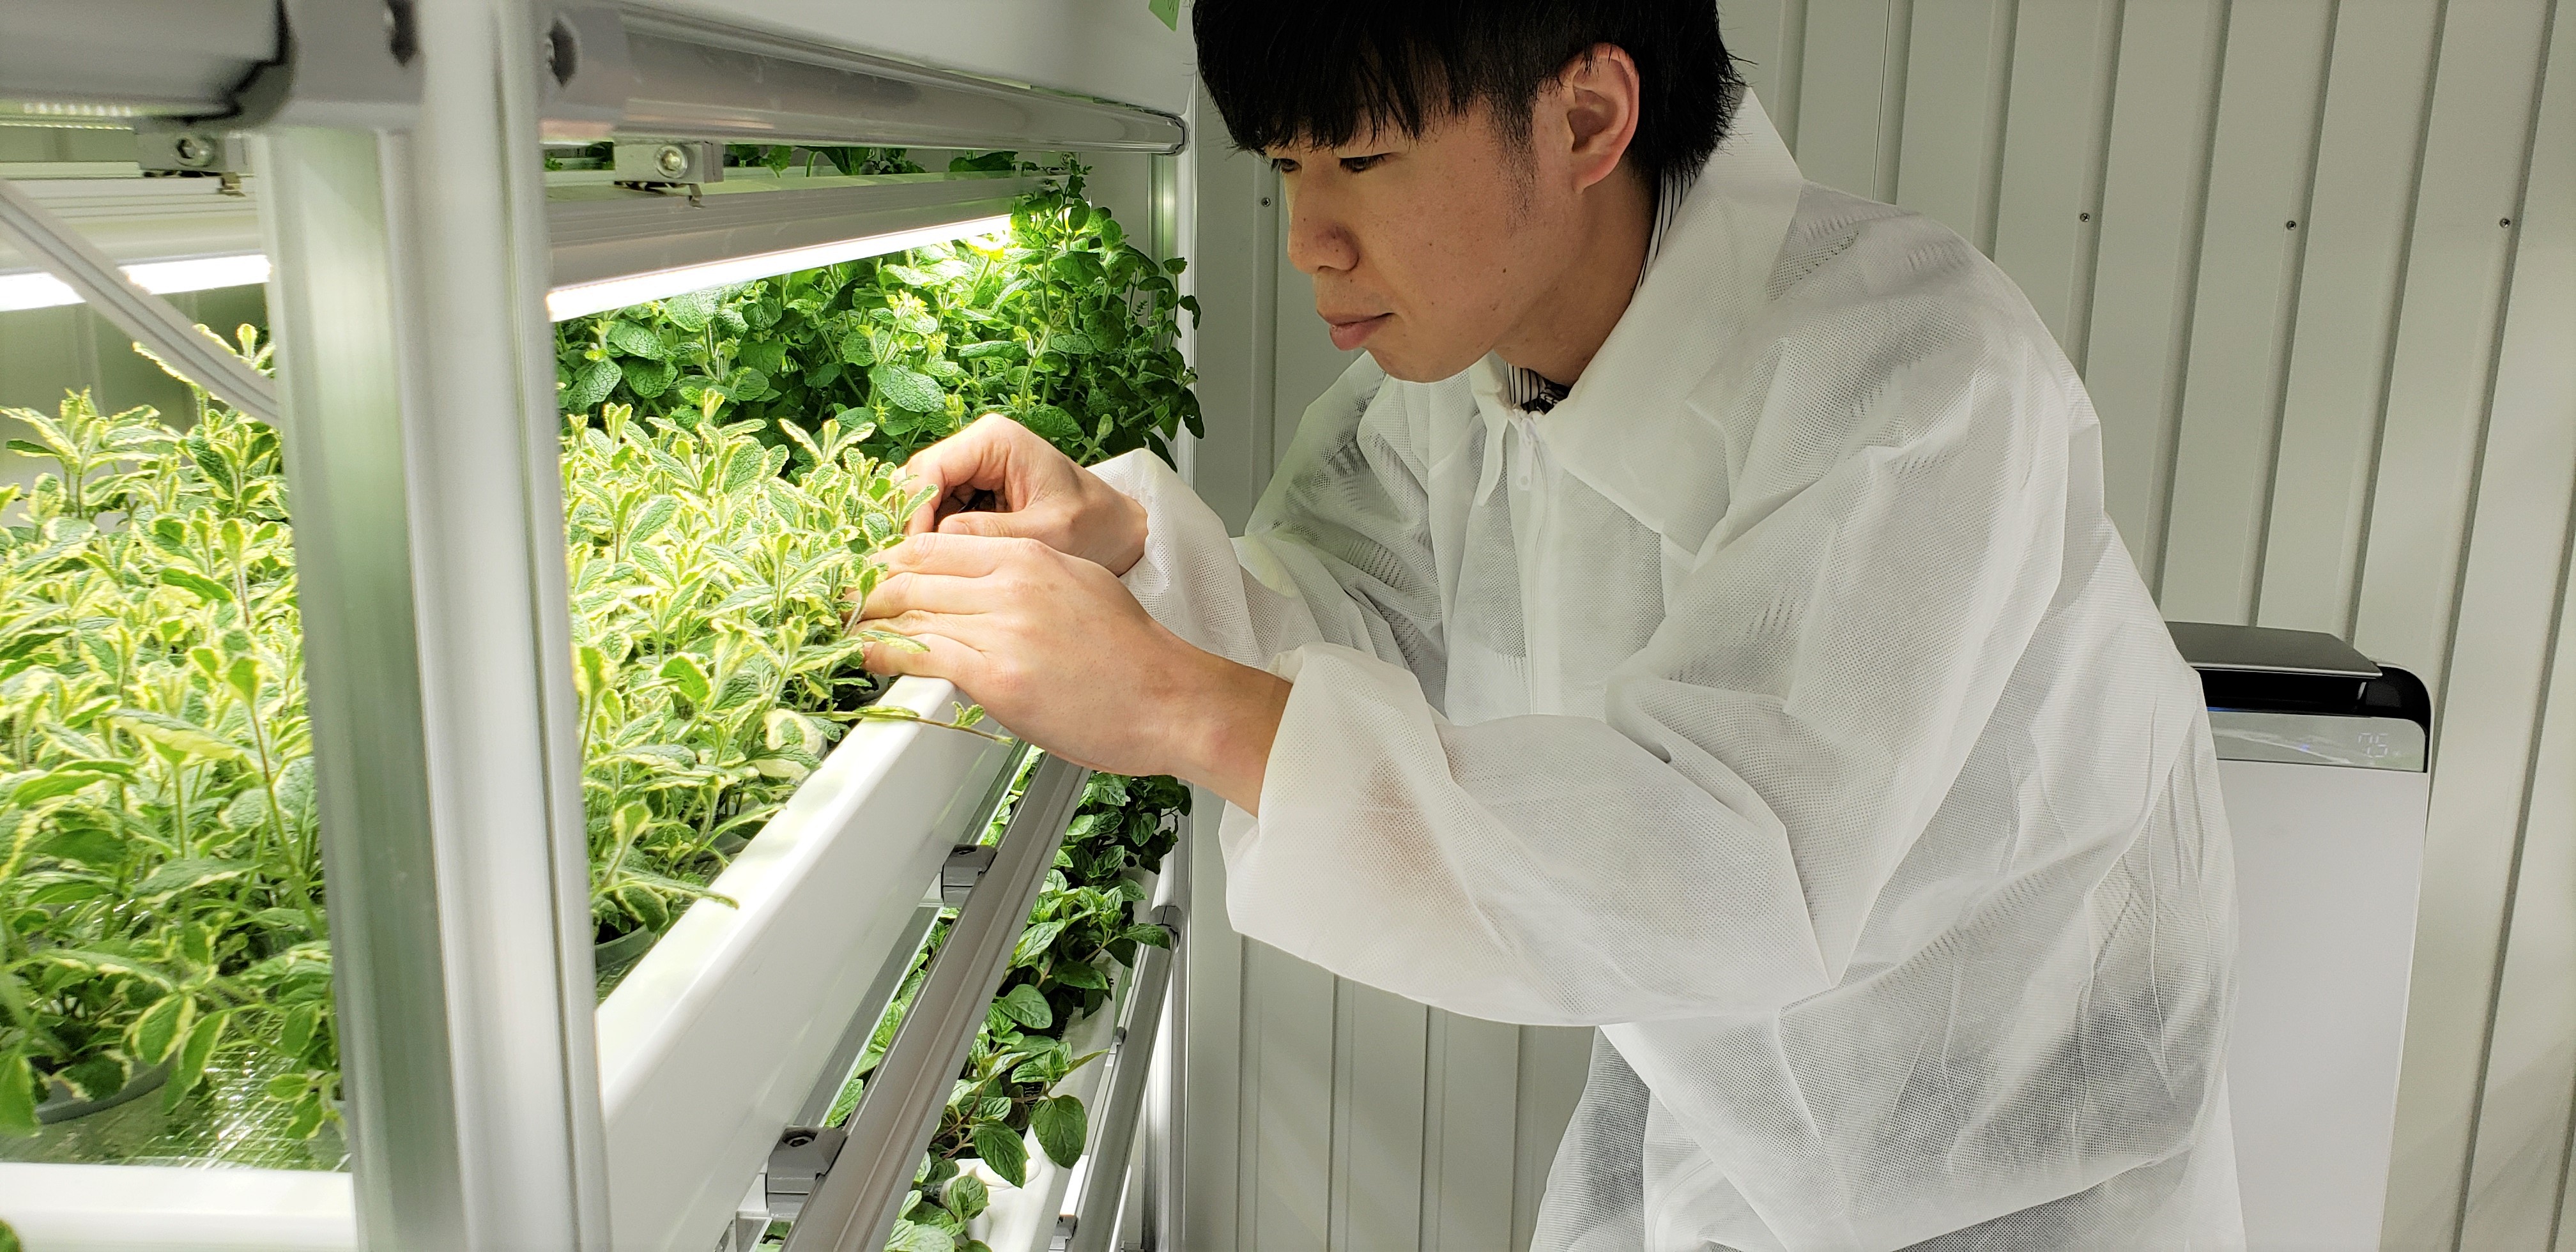 屋内農園型障がい者雇用支援サービス Ibuki 6月3日 月 第6farmを神奈川県海老名市にopen 株式会社スタートラインのプレスリリース